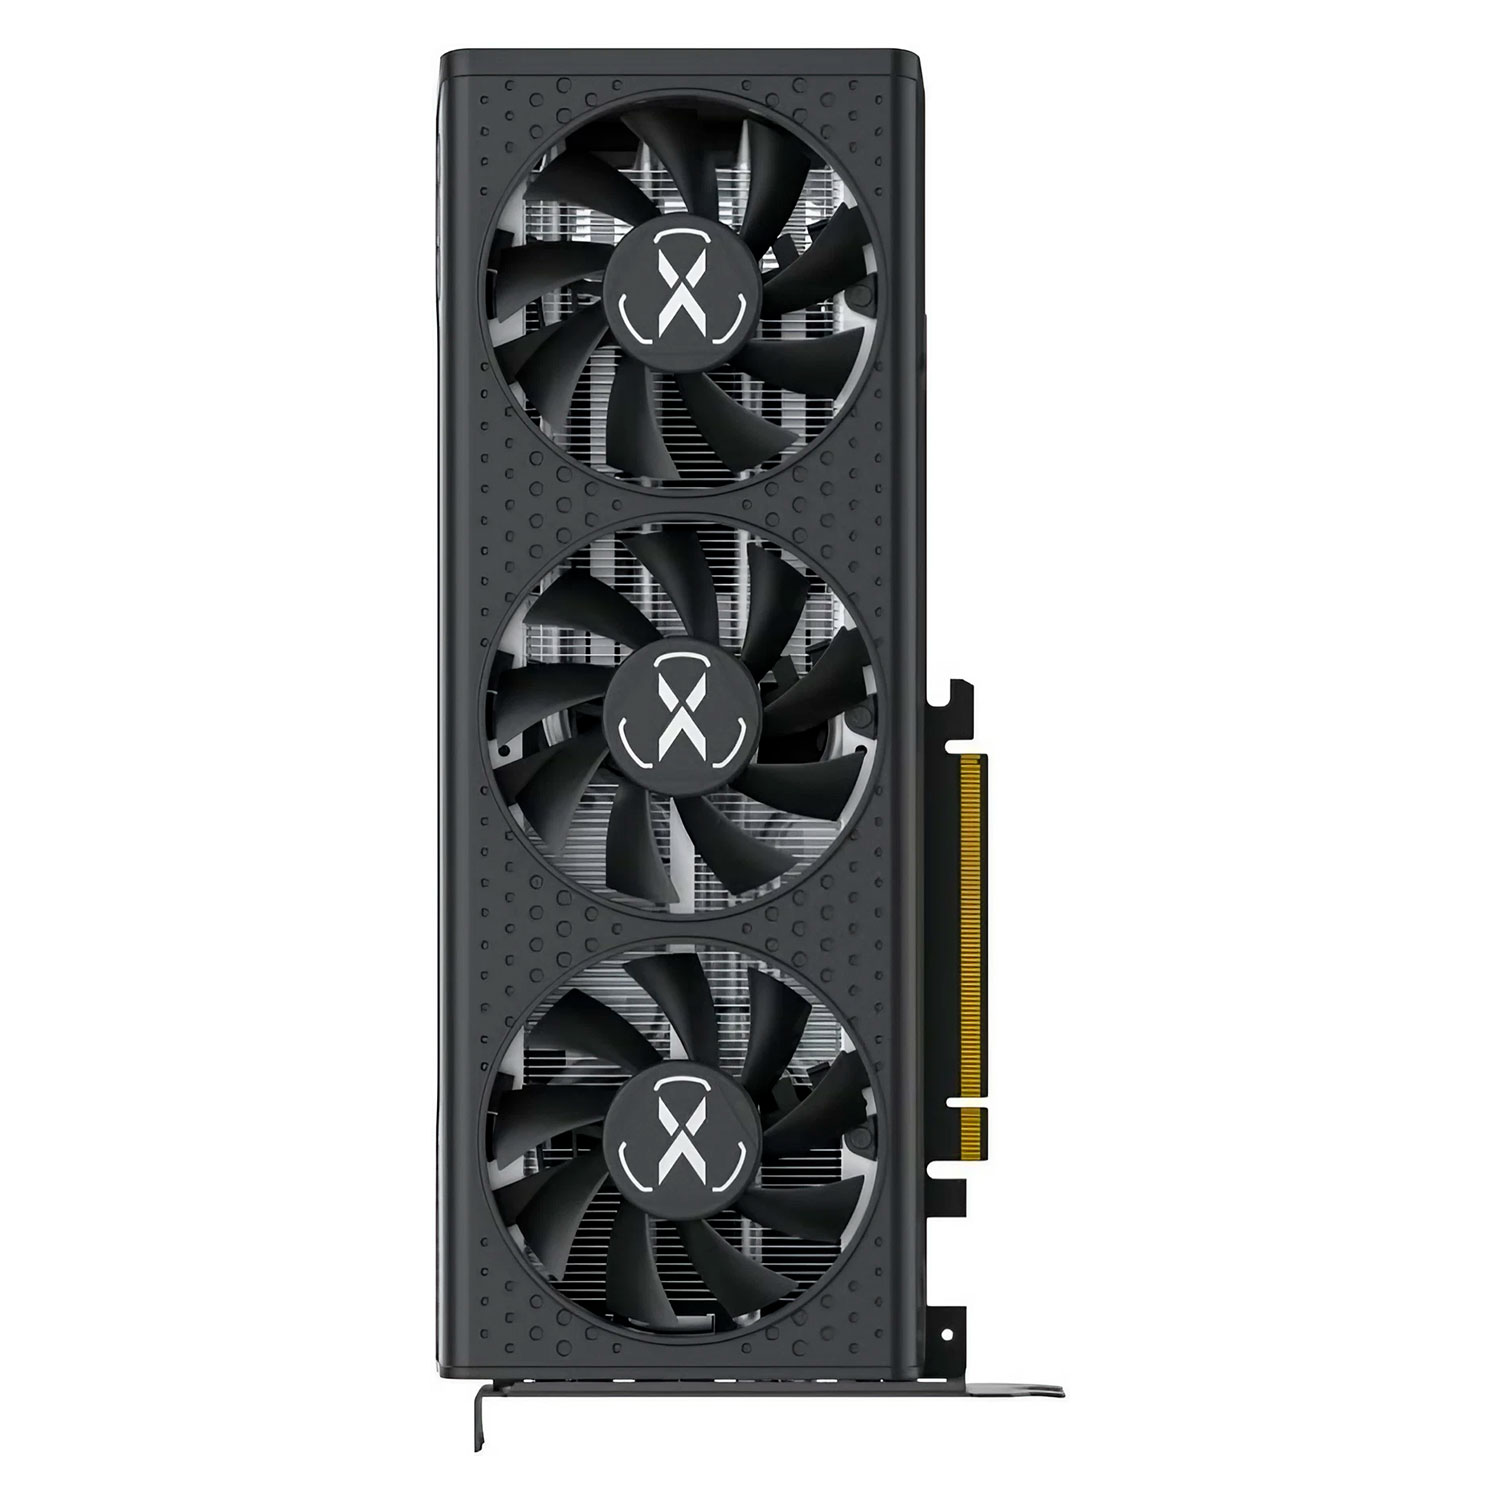 Placa de Vídeo XFX Speedster QICK 308 AMD Radeon RX 7600 8GB GDDR6 - RX-76PQICKBY